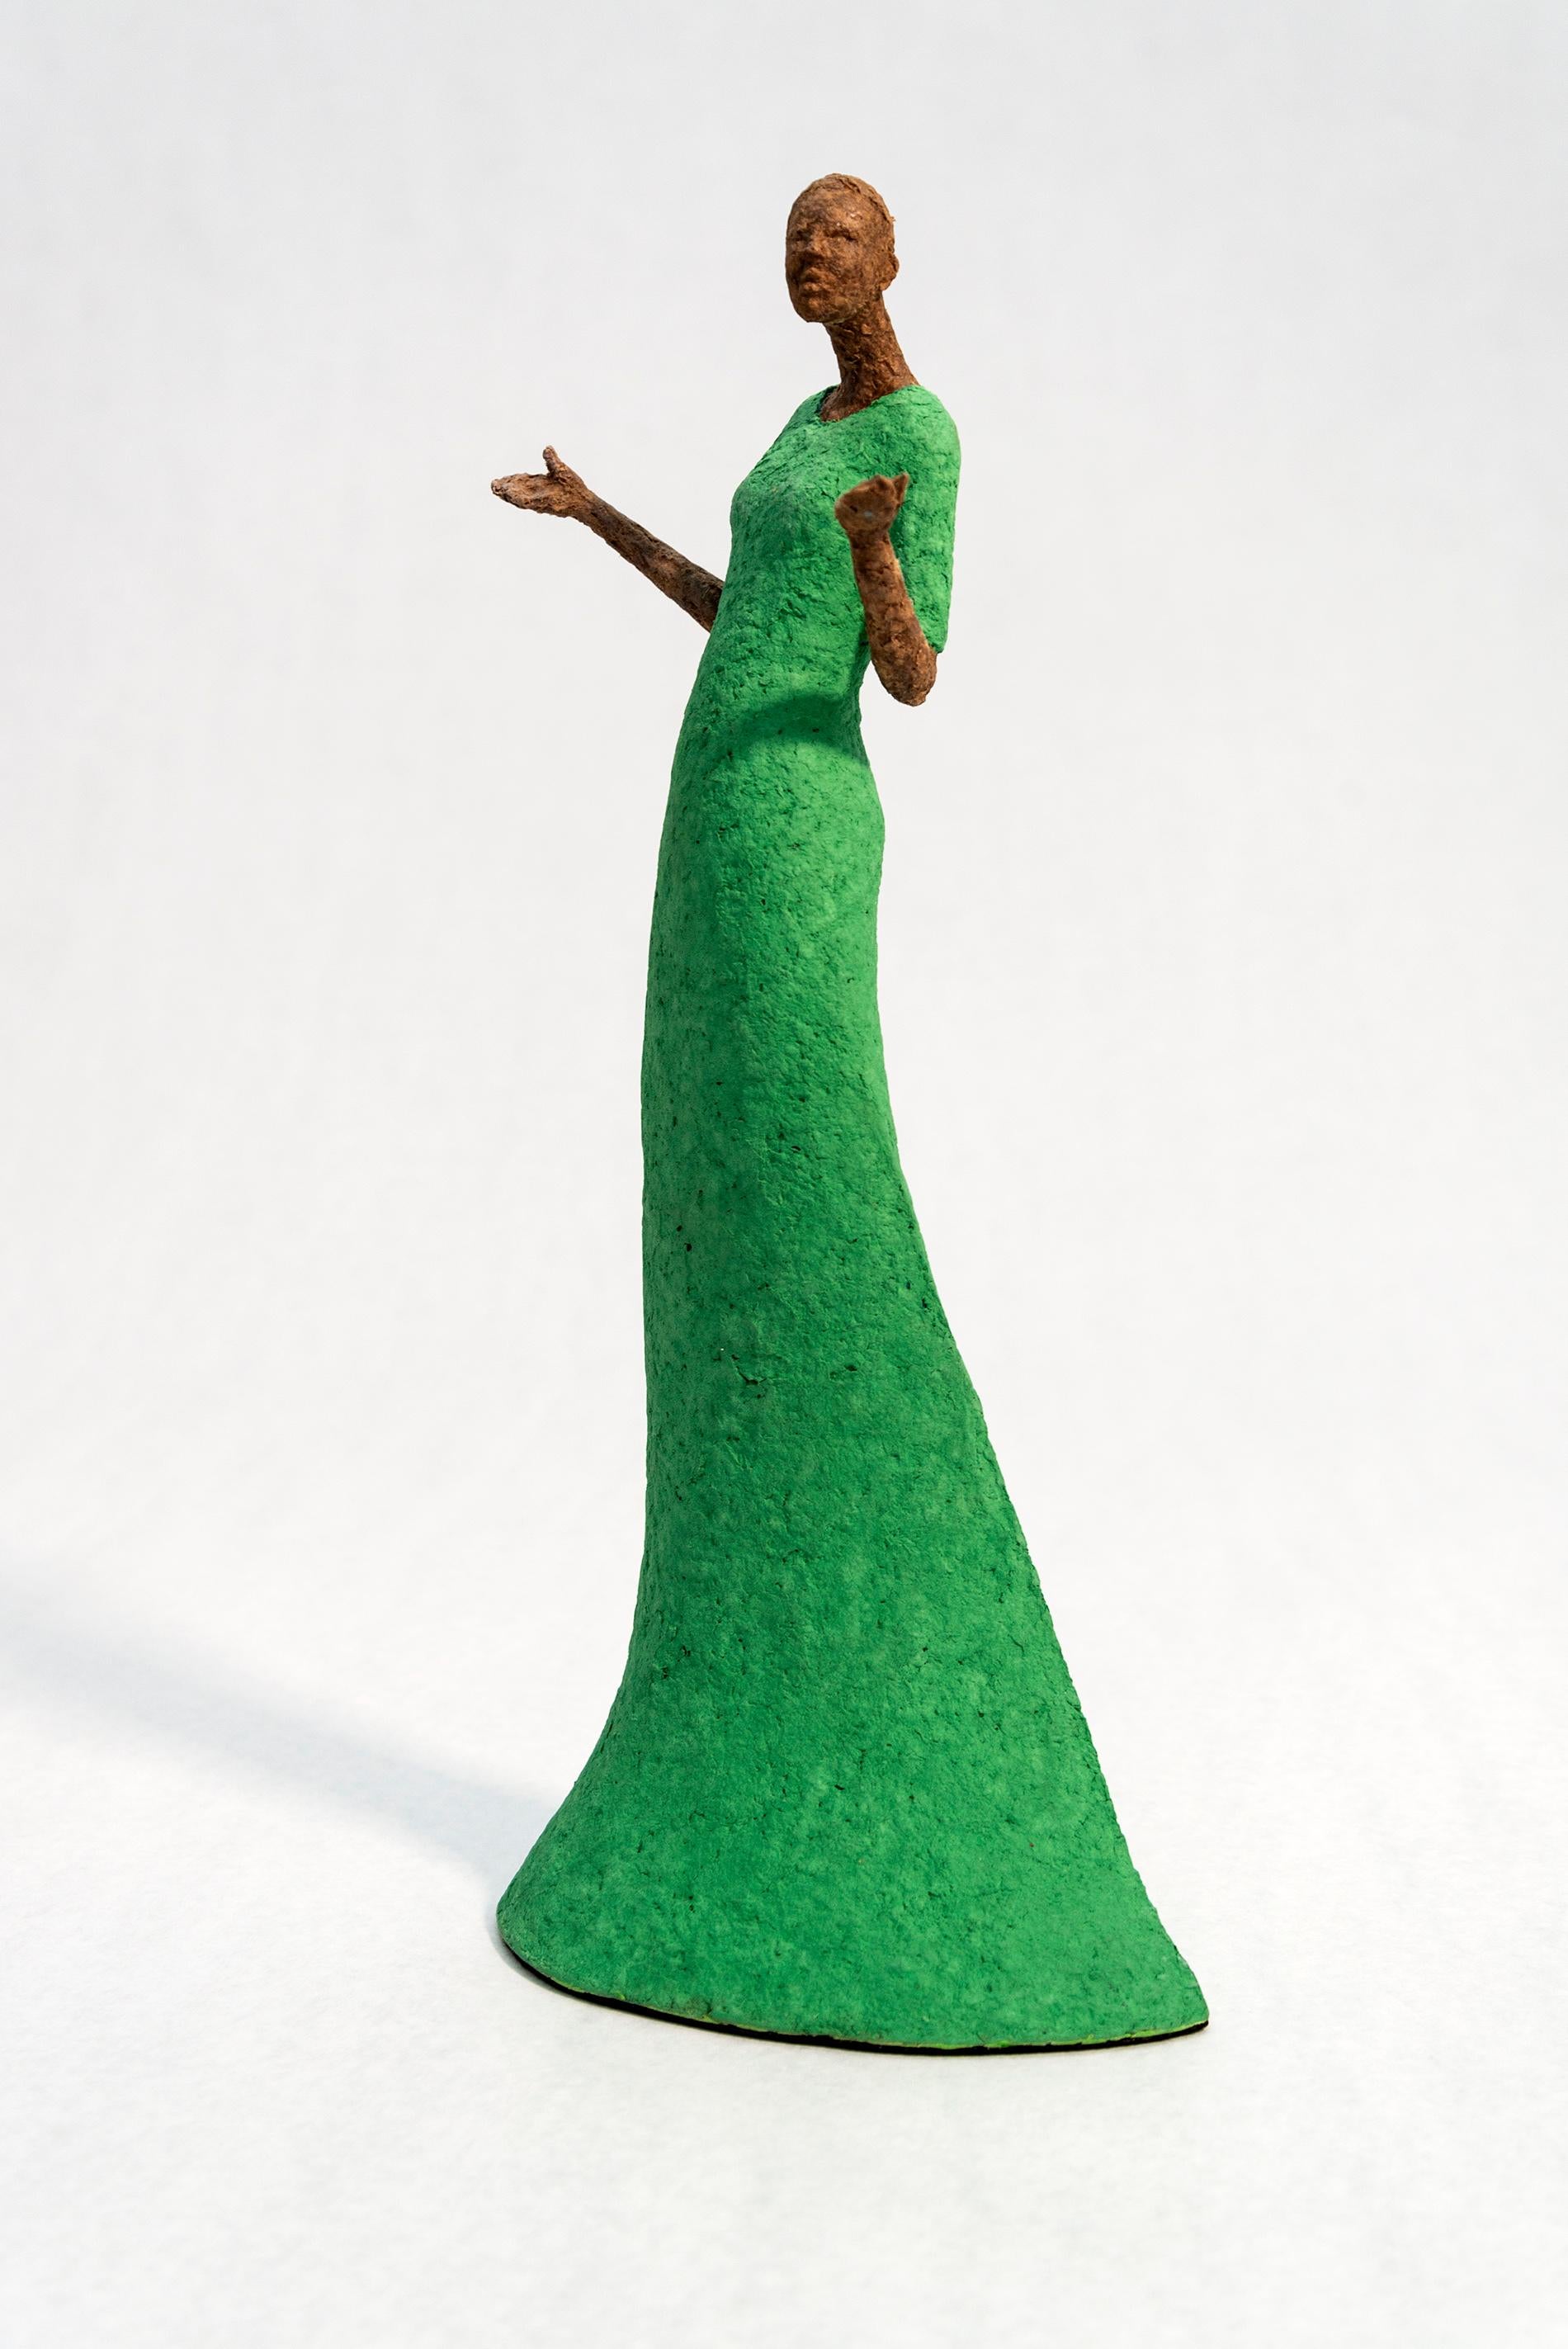 Bella - bright, expressive, textured, female, figurative, paper Mache sculpture - Sculpture by Paul Duval